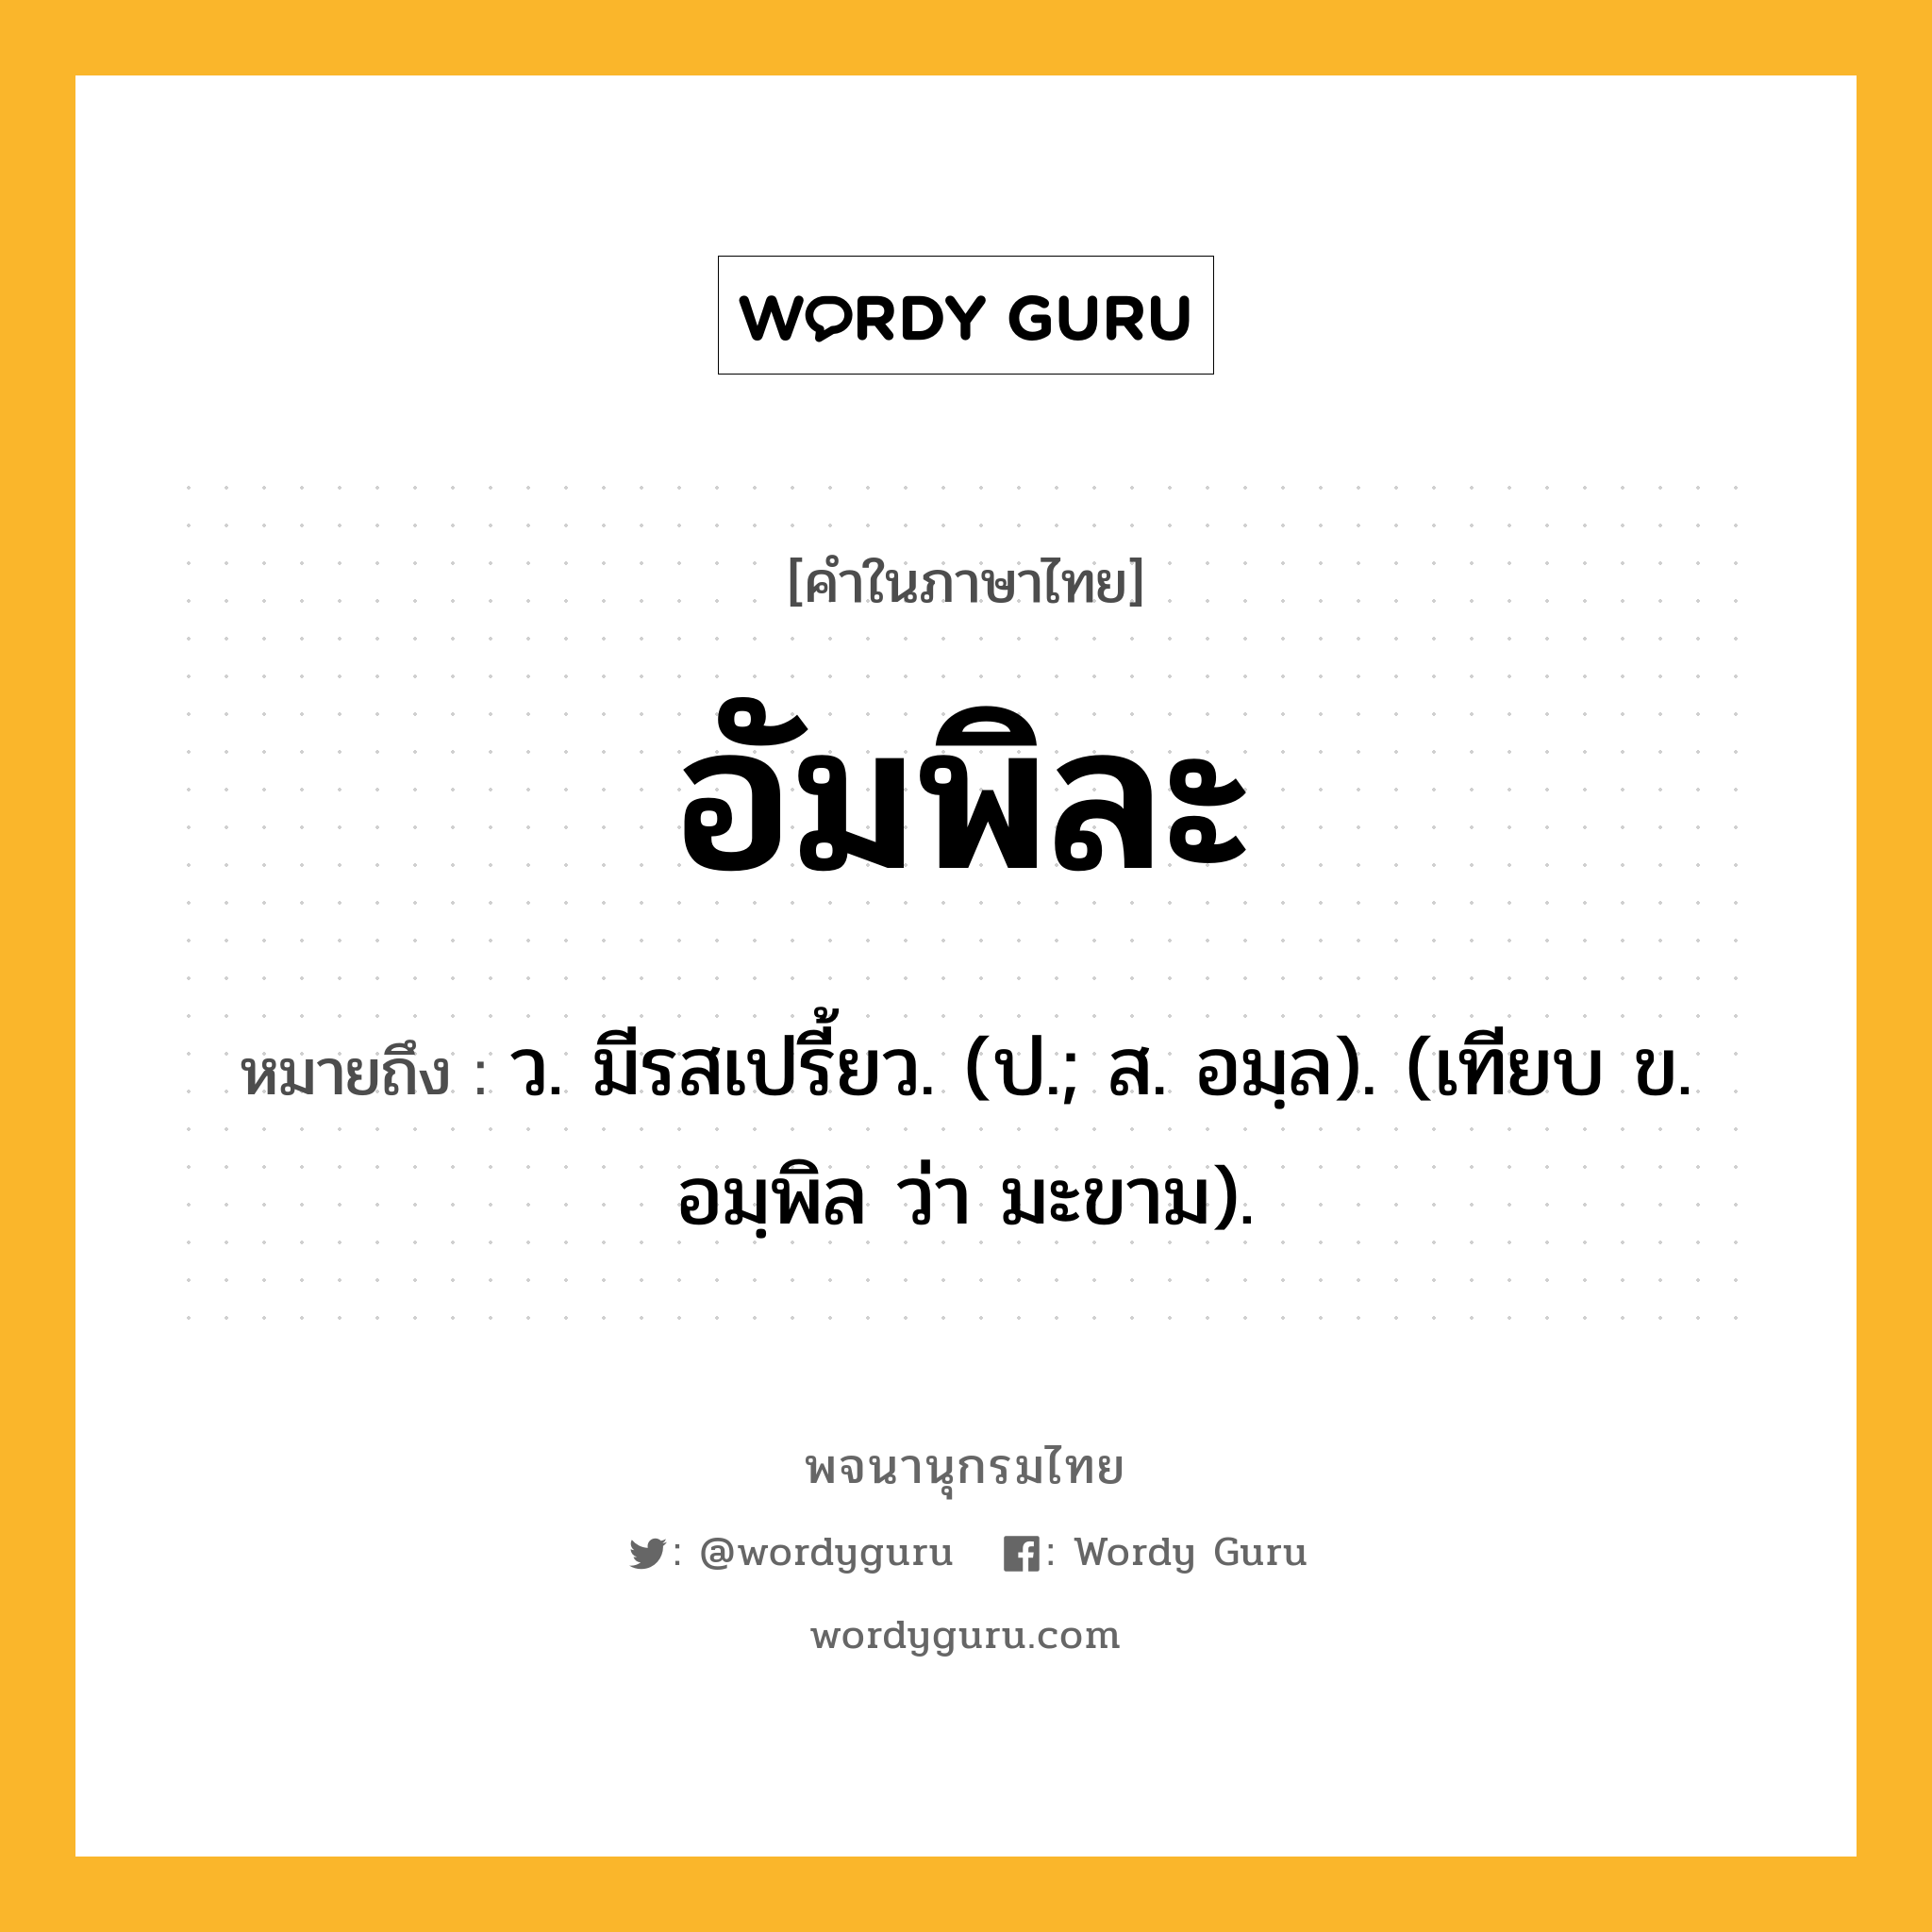 อัมพิละ หมายถึงอะไร?, คำในภาษาไทย อัมพิละ หมายถึง ว. มีรสเปรี้ยว. (ป.; ส. อมฺล). (เทียบ ข. อมฺพิล ว่า มะขาม).